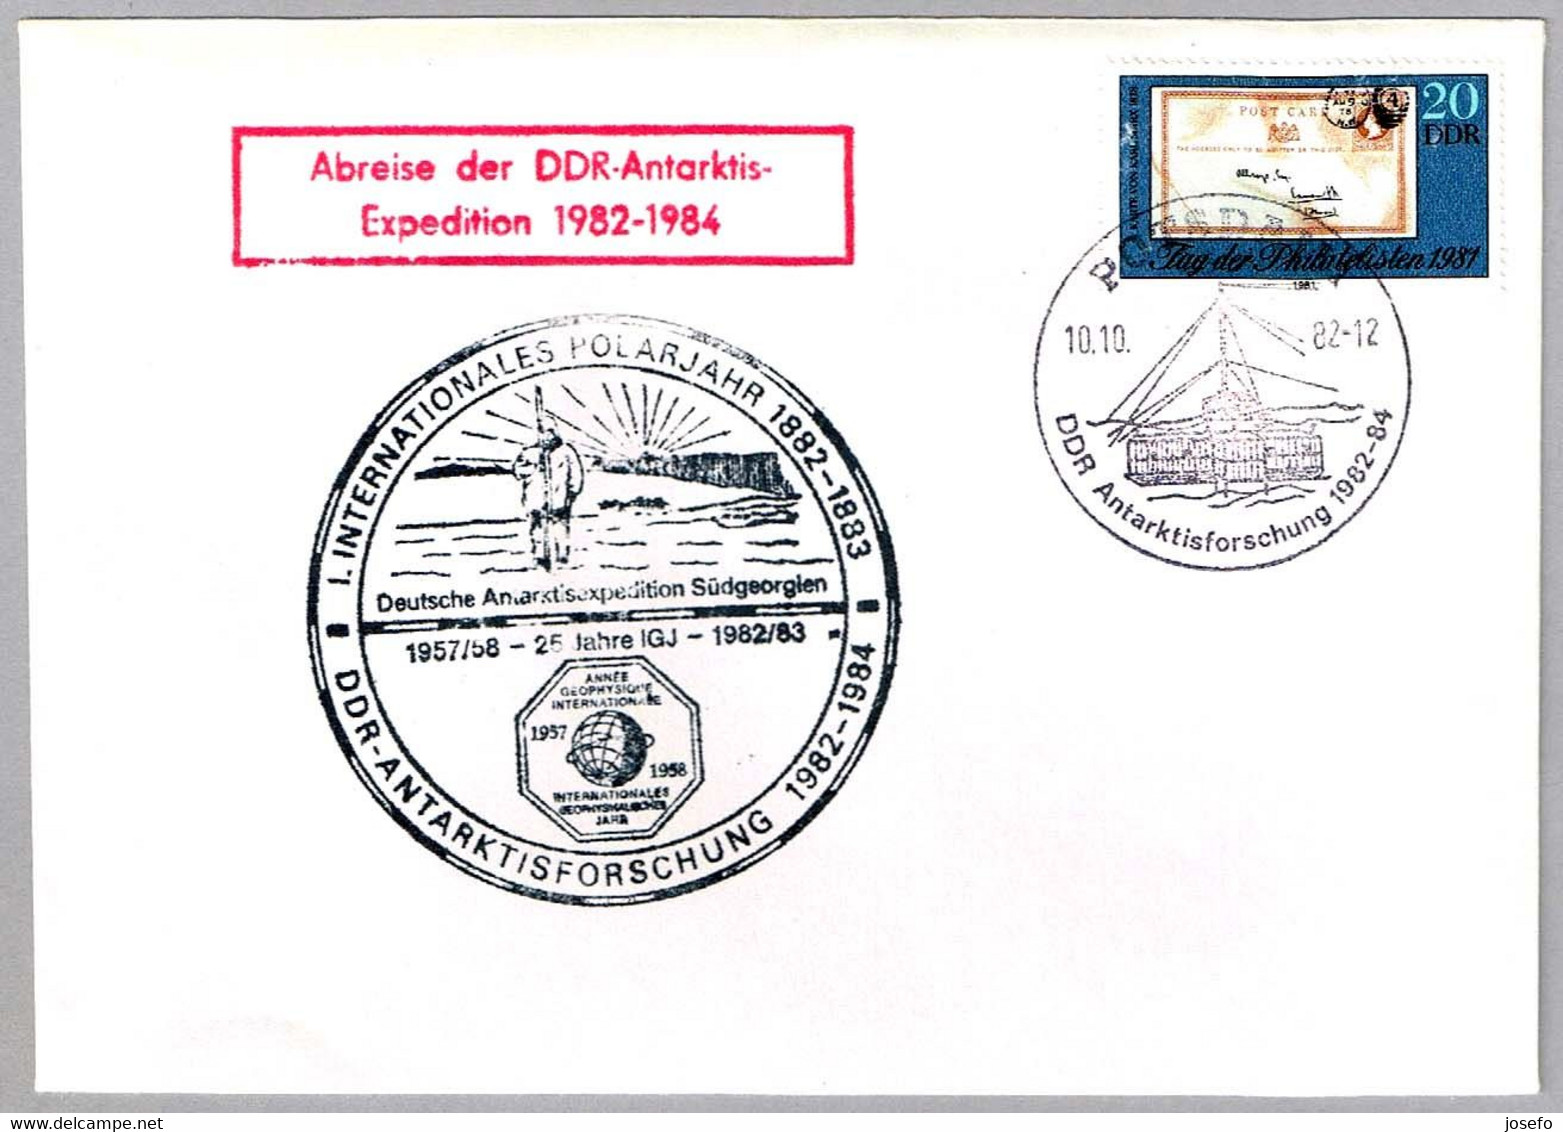 AÑO POLAR INTERNACIONAL - Investigacion DDR En La Antartida. Potsdam 1982 - Internationales Polarjahr